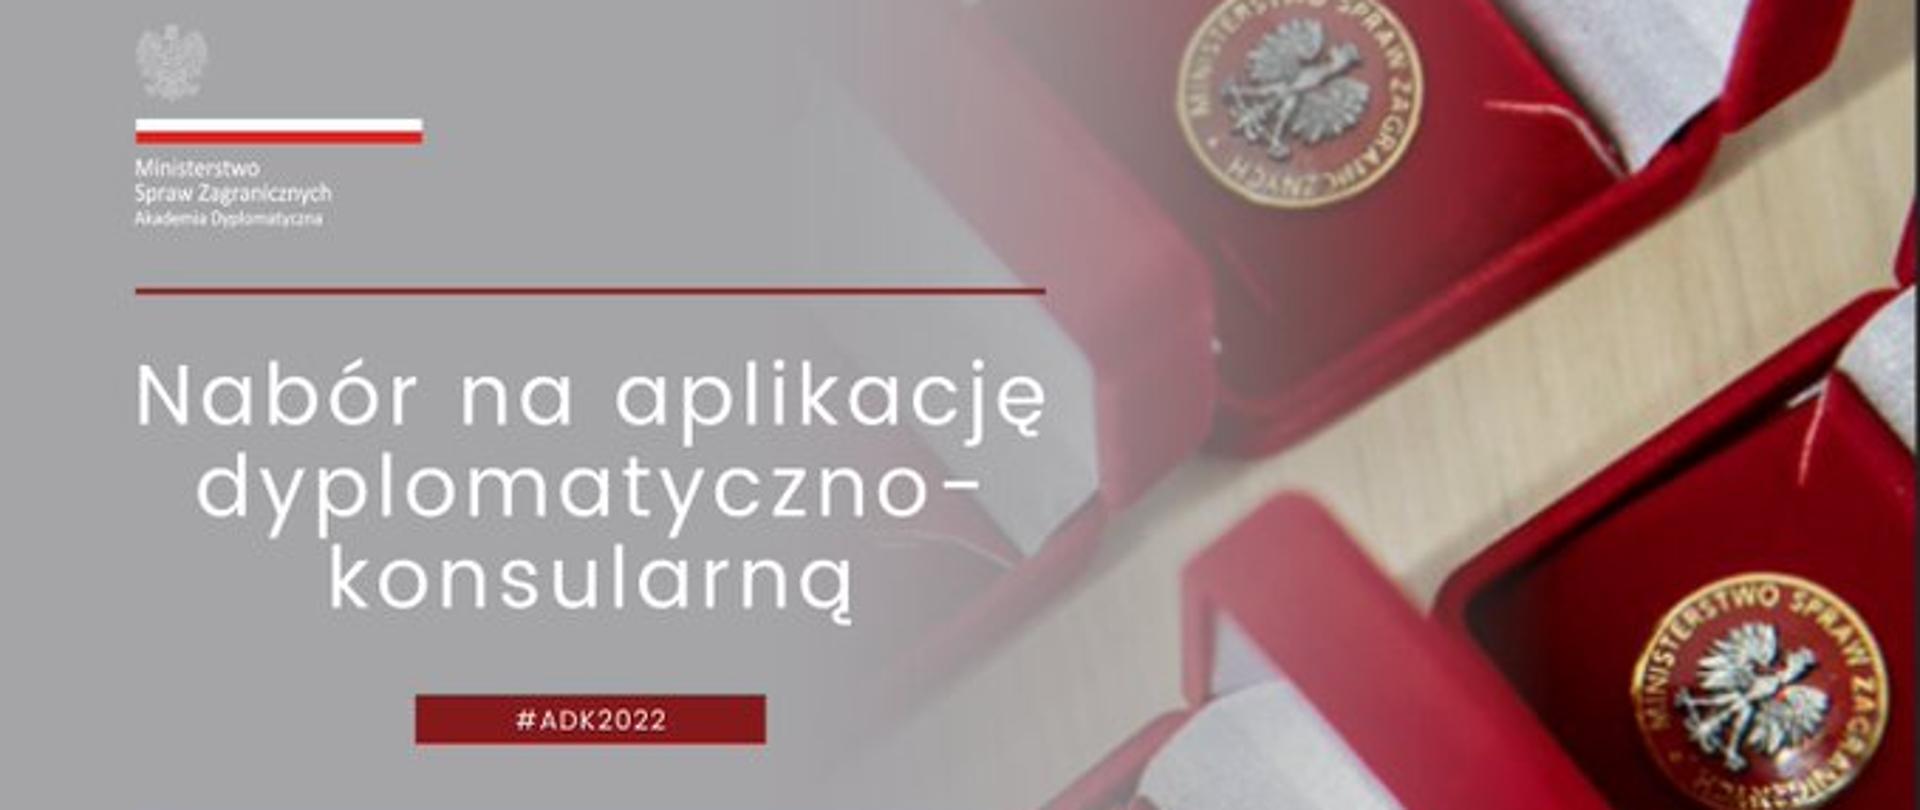 Konkurs na aplikację dyplomatyczno-konsularną 2022